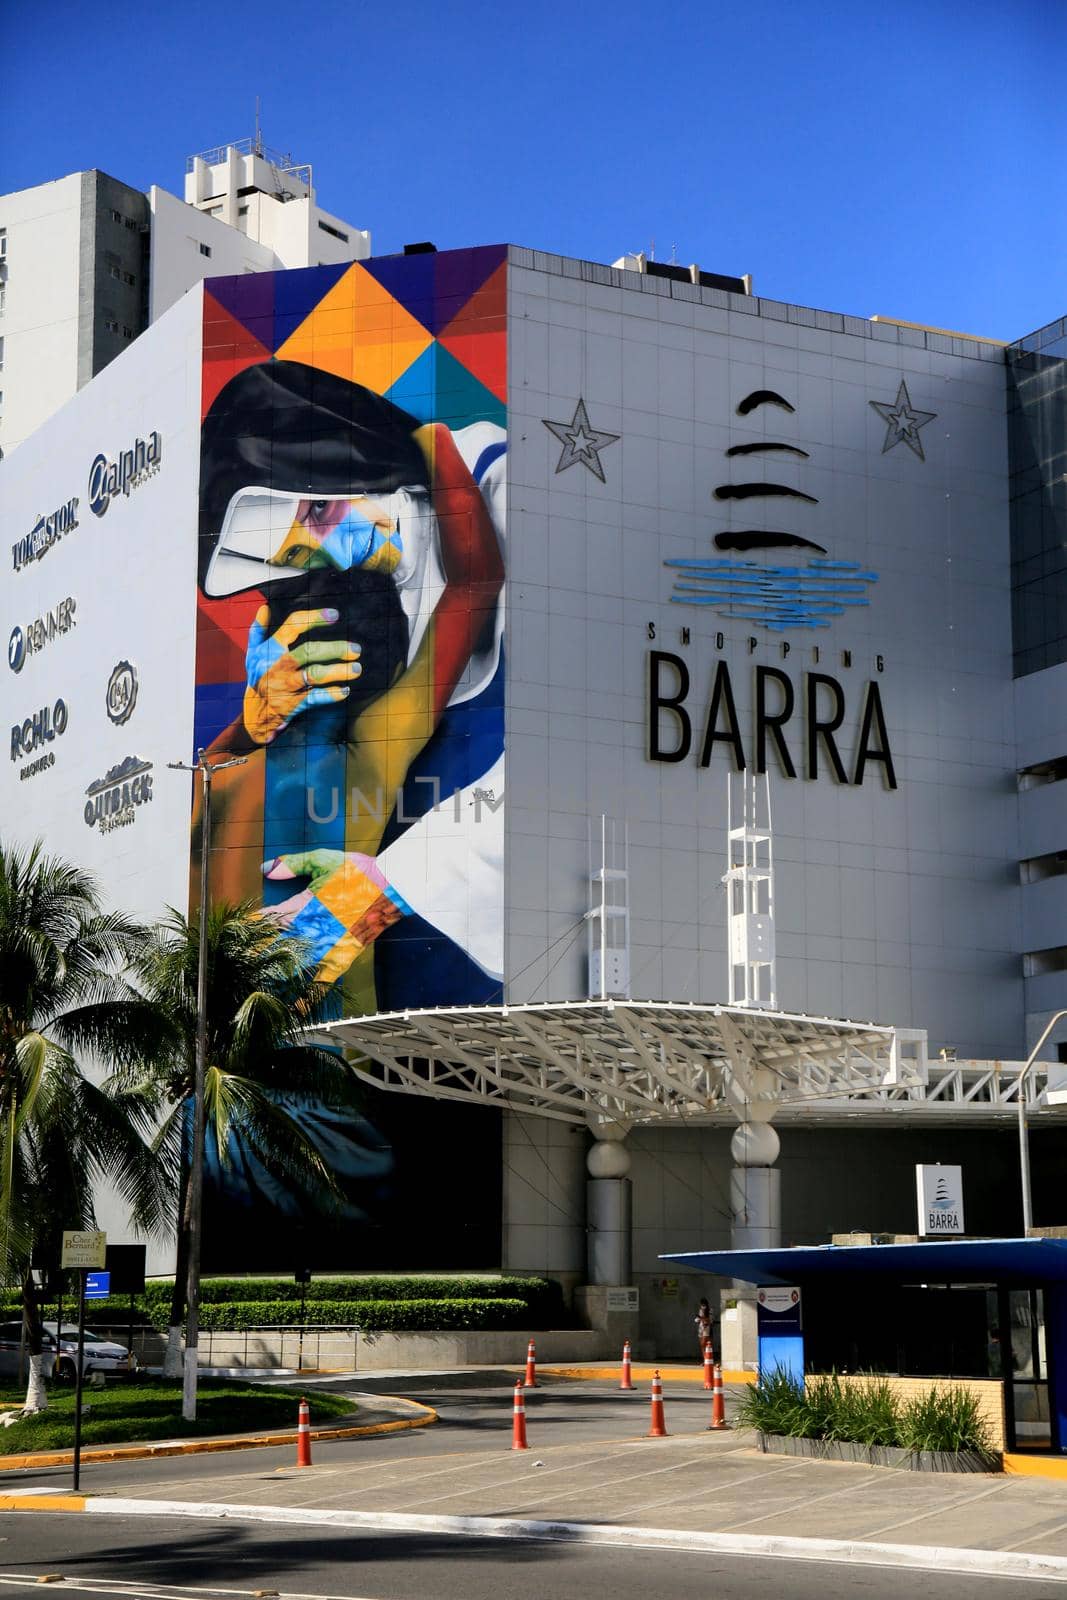 salvador, bahia, brazil - december 14, 2020: facade of Shopping Barra in the city of Salvador.